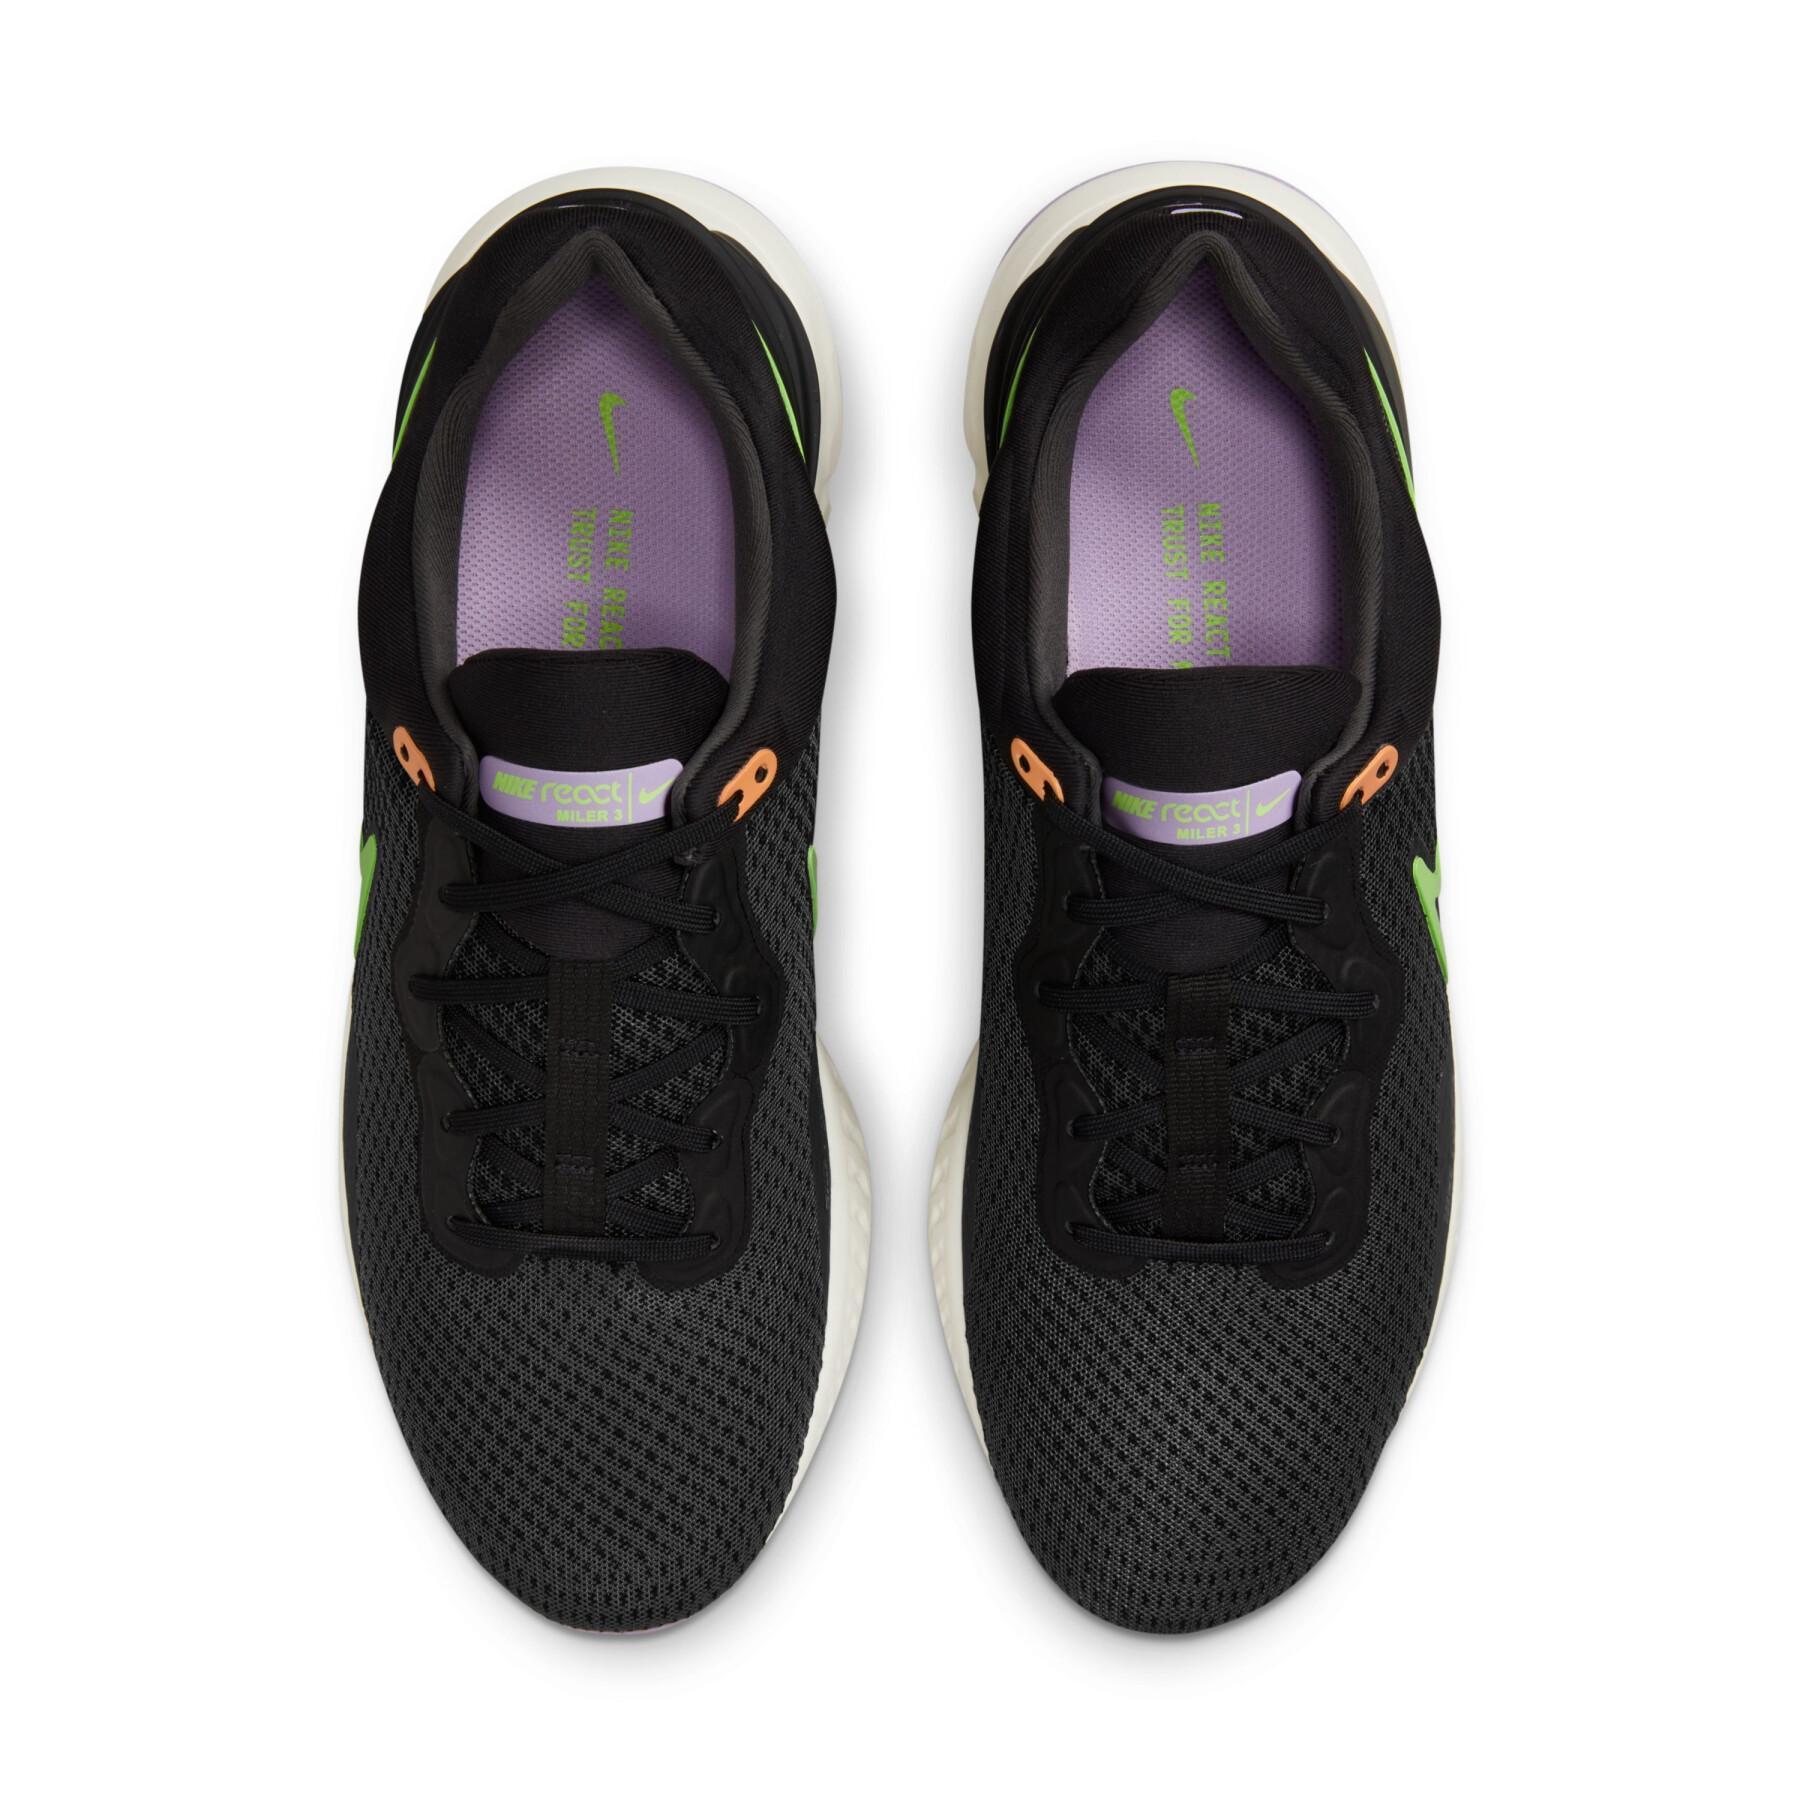 Chaussures de running Nike React Miler 3